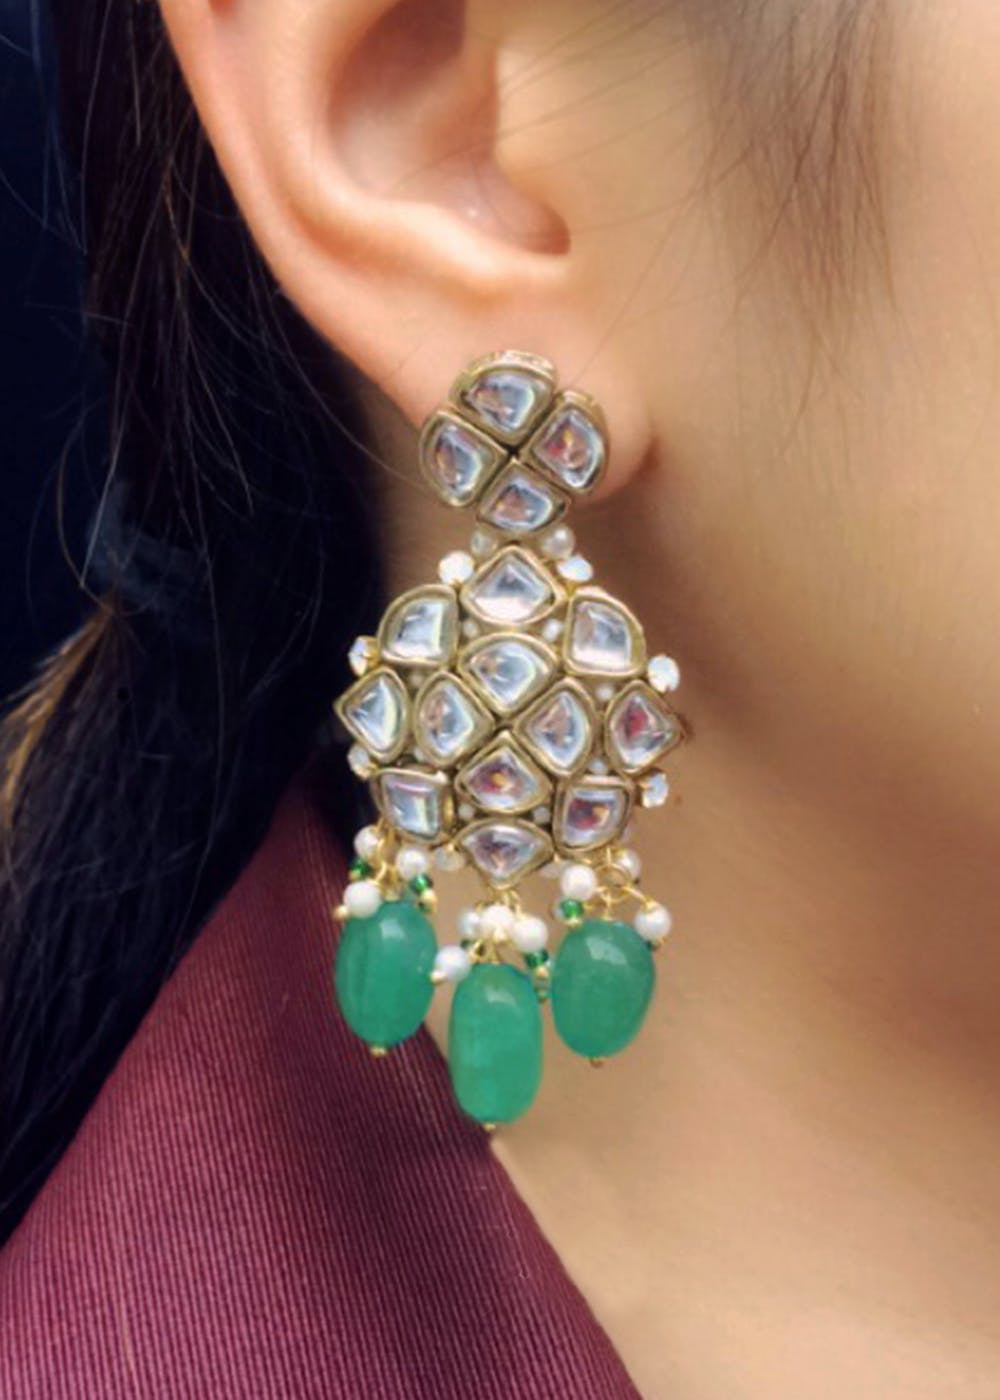 EMERALD Chandelier Earrings Emerald Bridal Drop Earrings  Etsy  Bridal  earrings drop Green chandelier earrings Etsy earrings